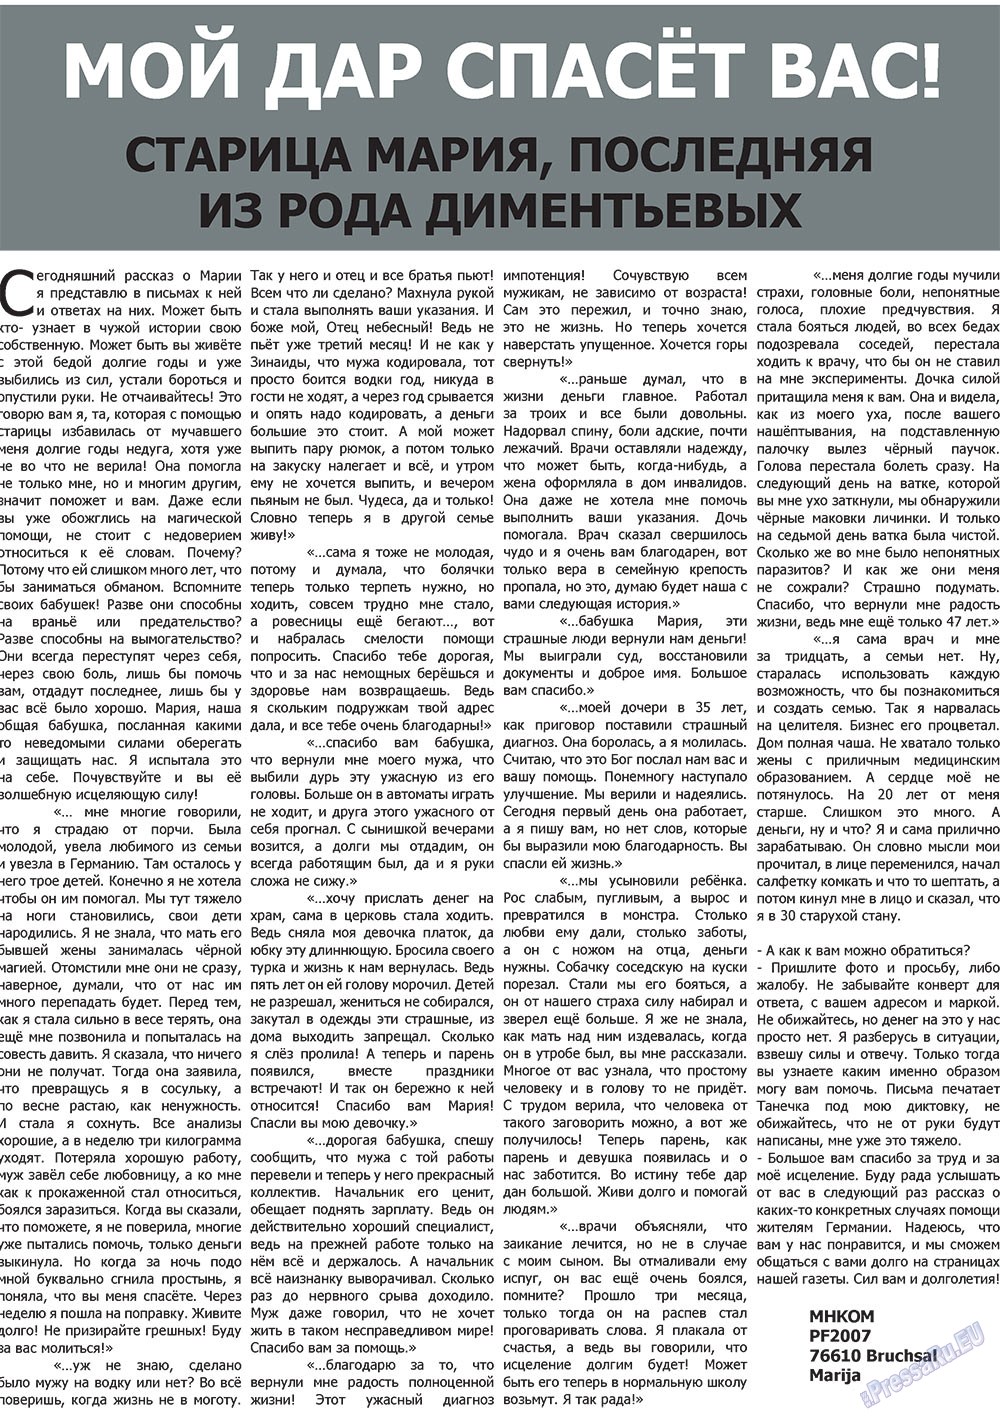 Наше время, газета. 2010 №3 стр.17